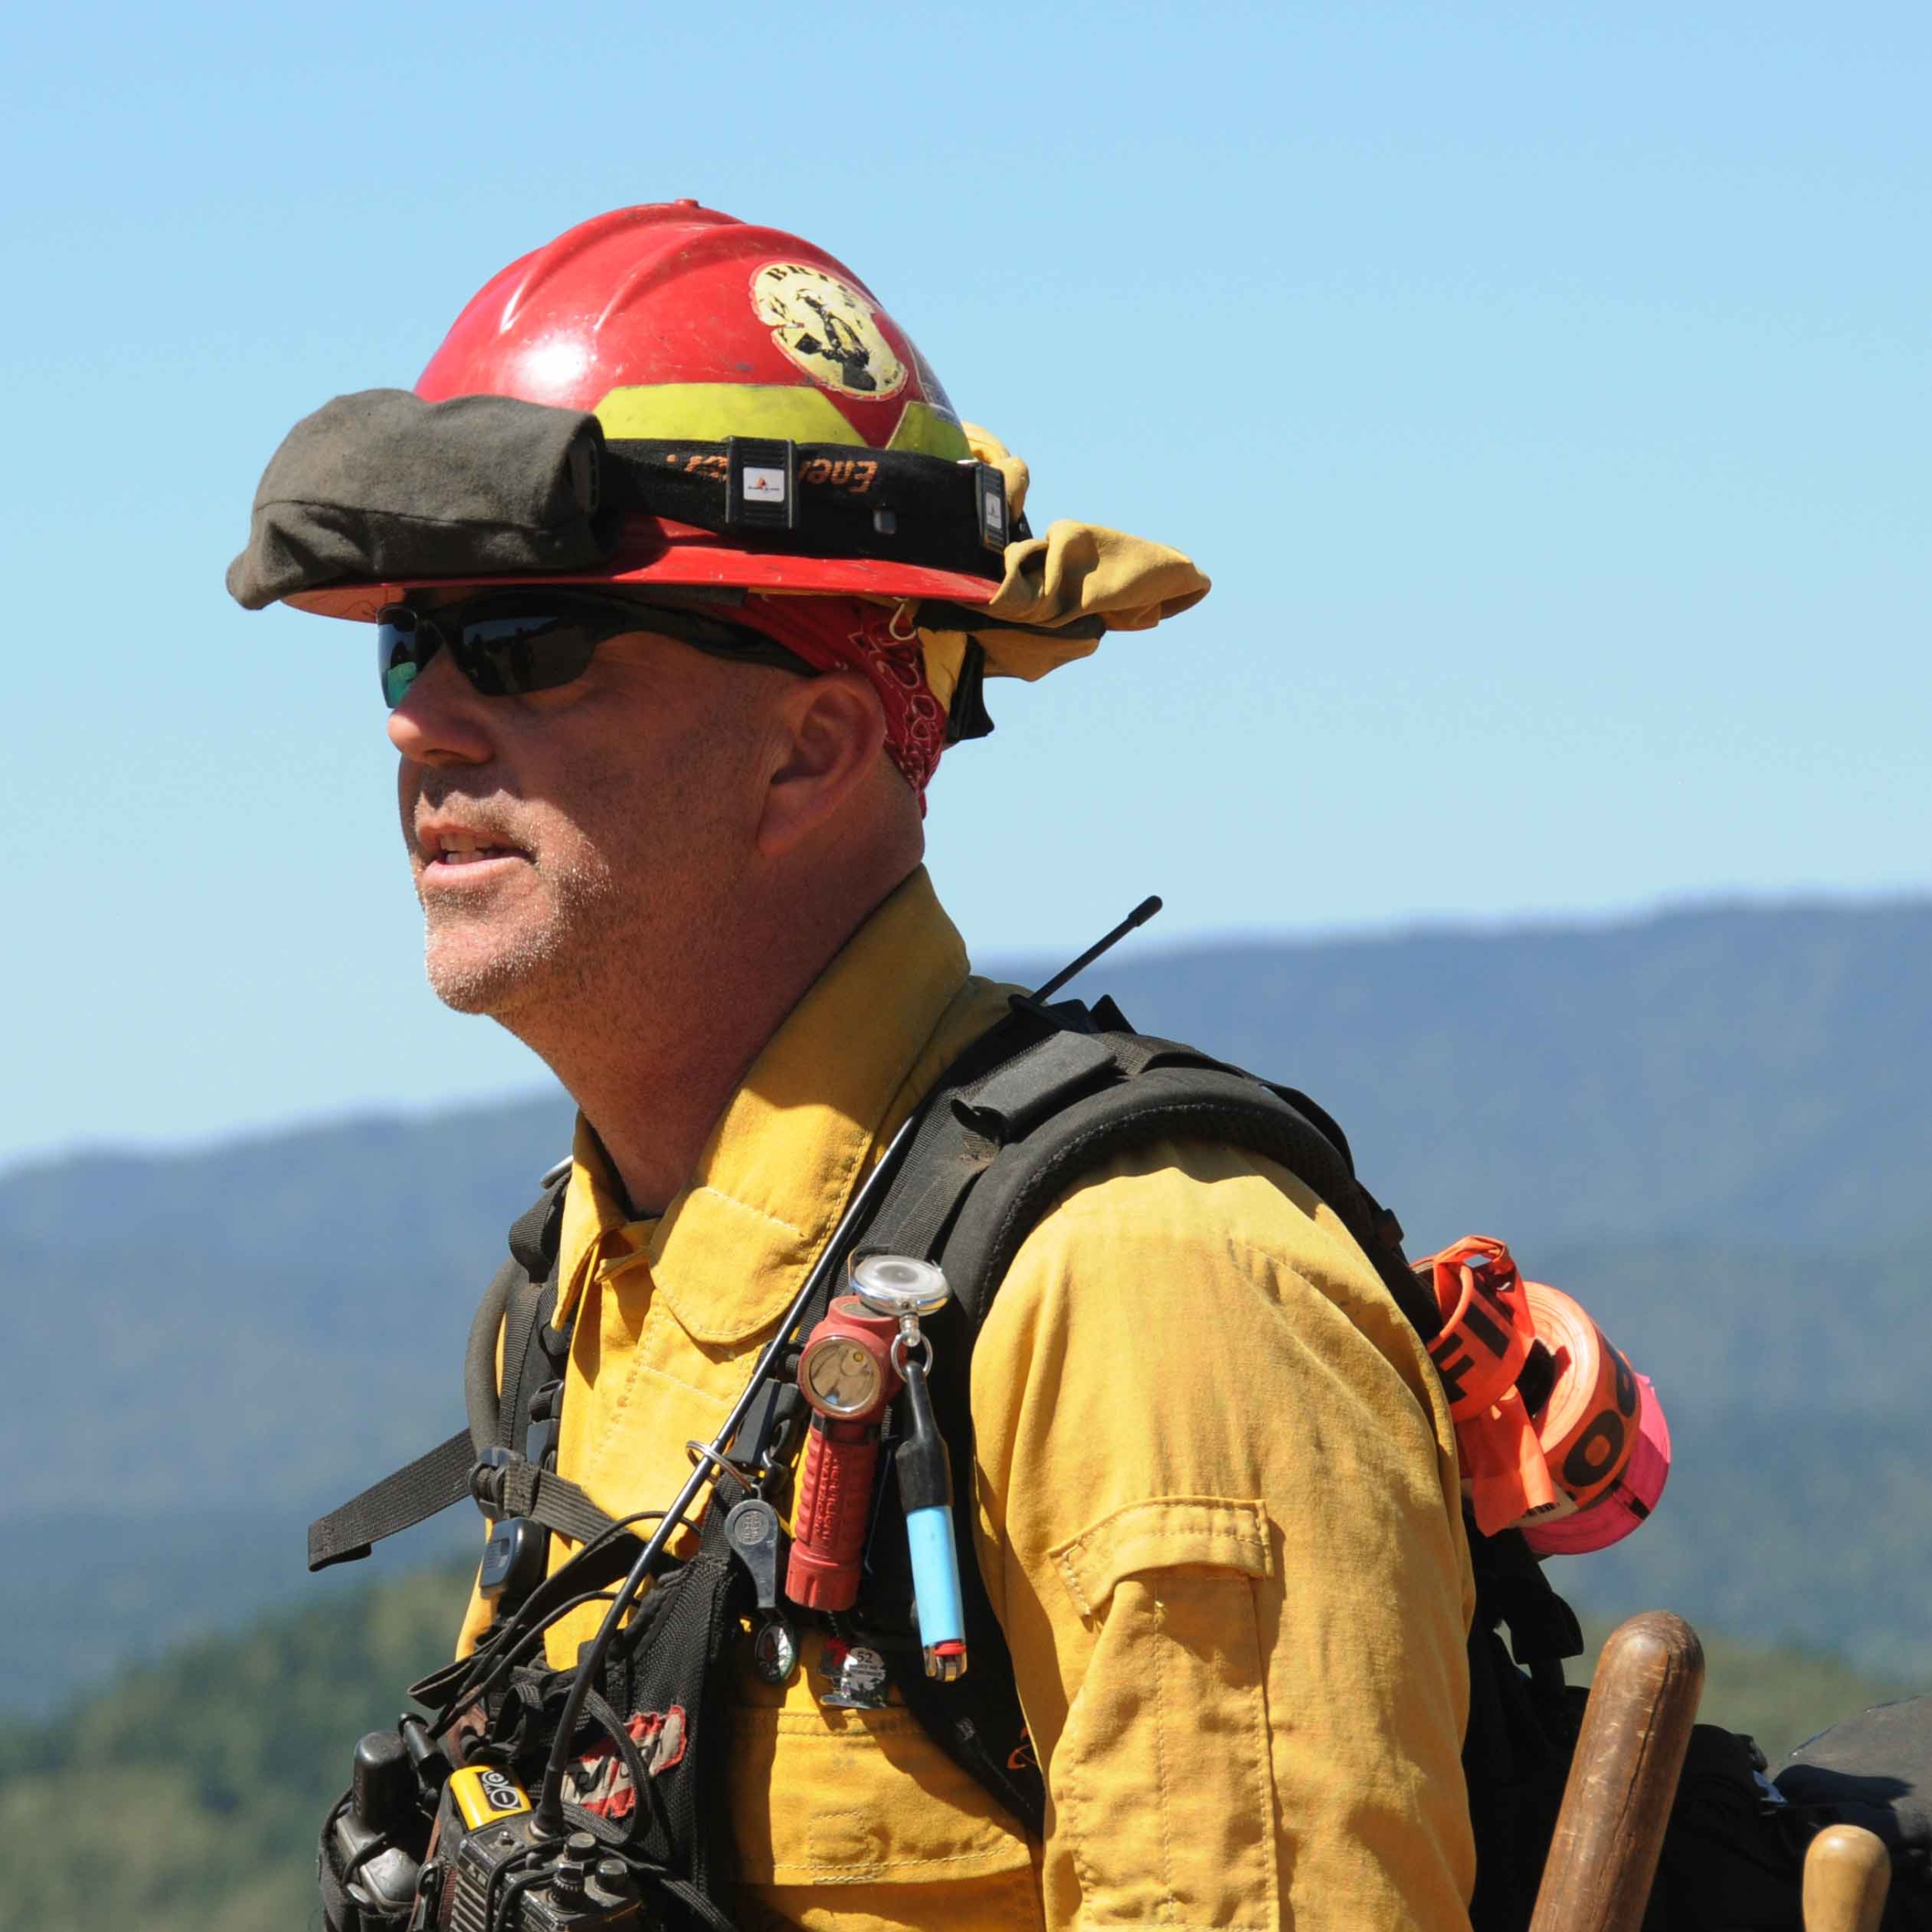 Phil Dye in firefighting gear